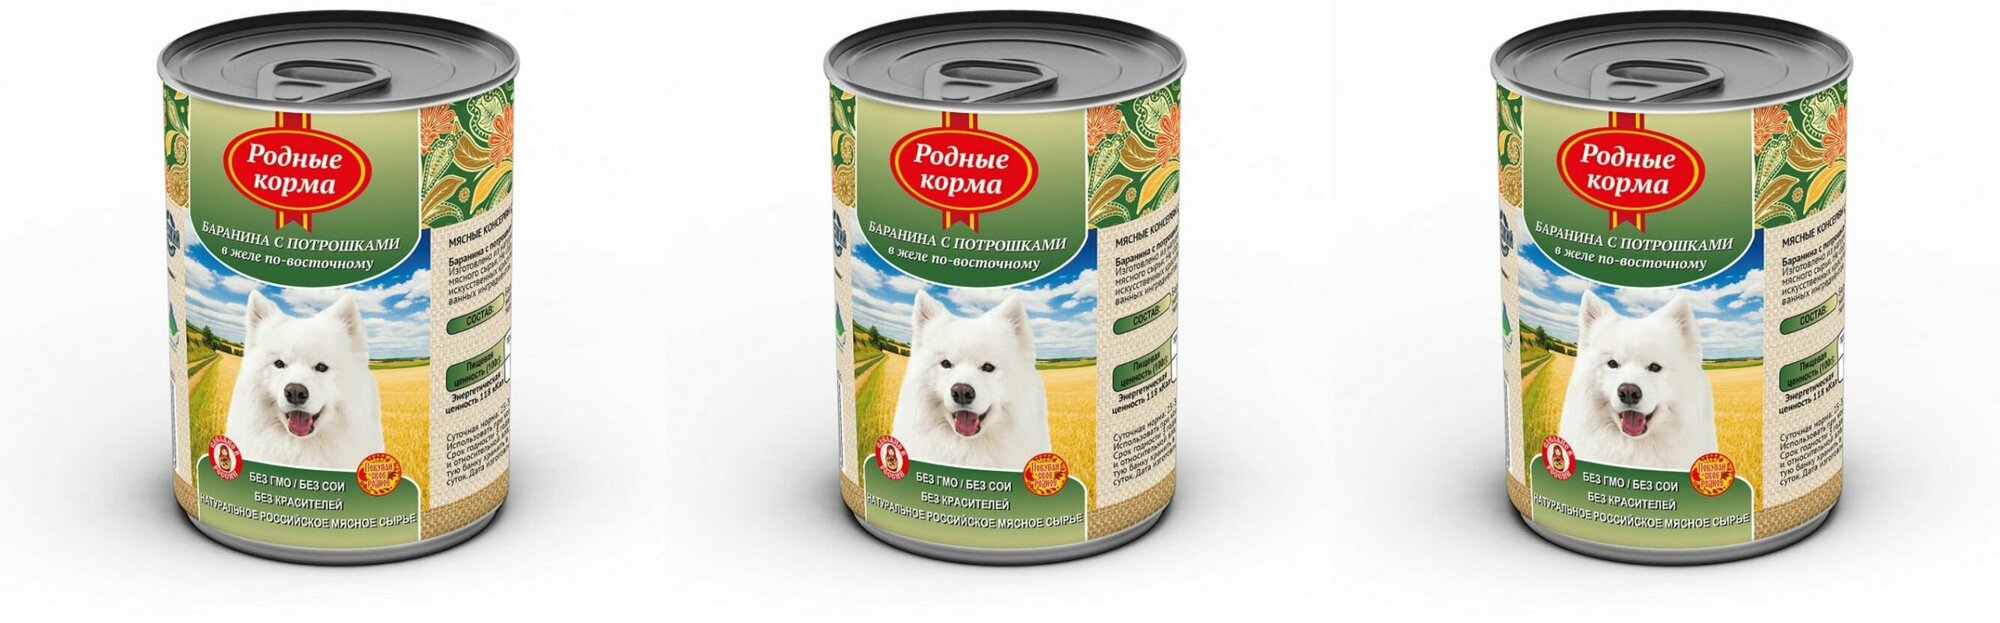 Родные корма консервы для собак баранина с потрошками в желе по-восточному, 410 г, 3 шт